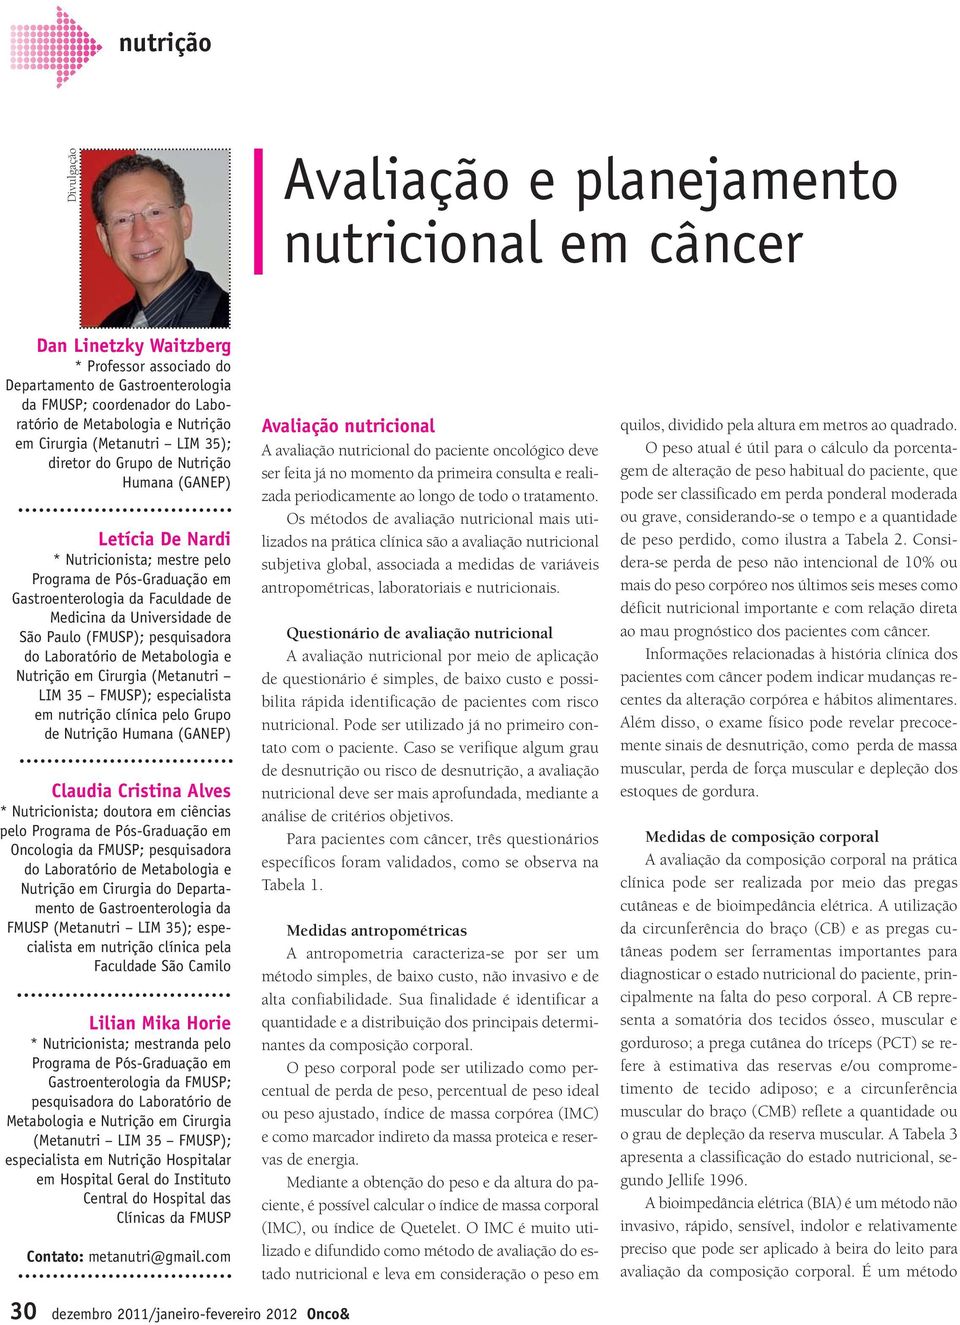 Faculdade de Medicina da Universidade de São Paulo (FMUSP); pesquisadora do Laboratório de Metabologia e Nutrição em Cirurgia (Metanutri LIM 35 FMUSP); especialista em nutrição clínica pelo Grupo de